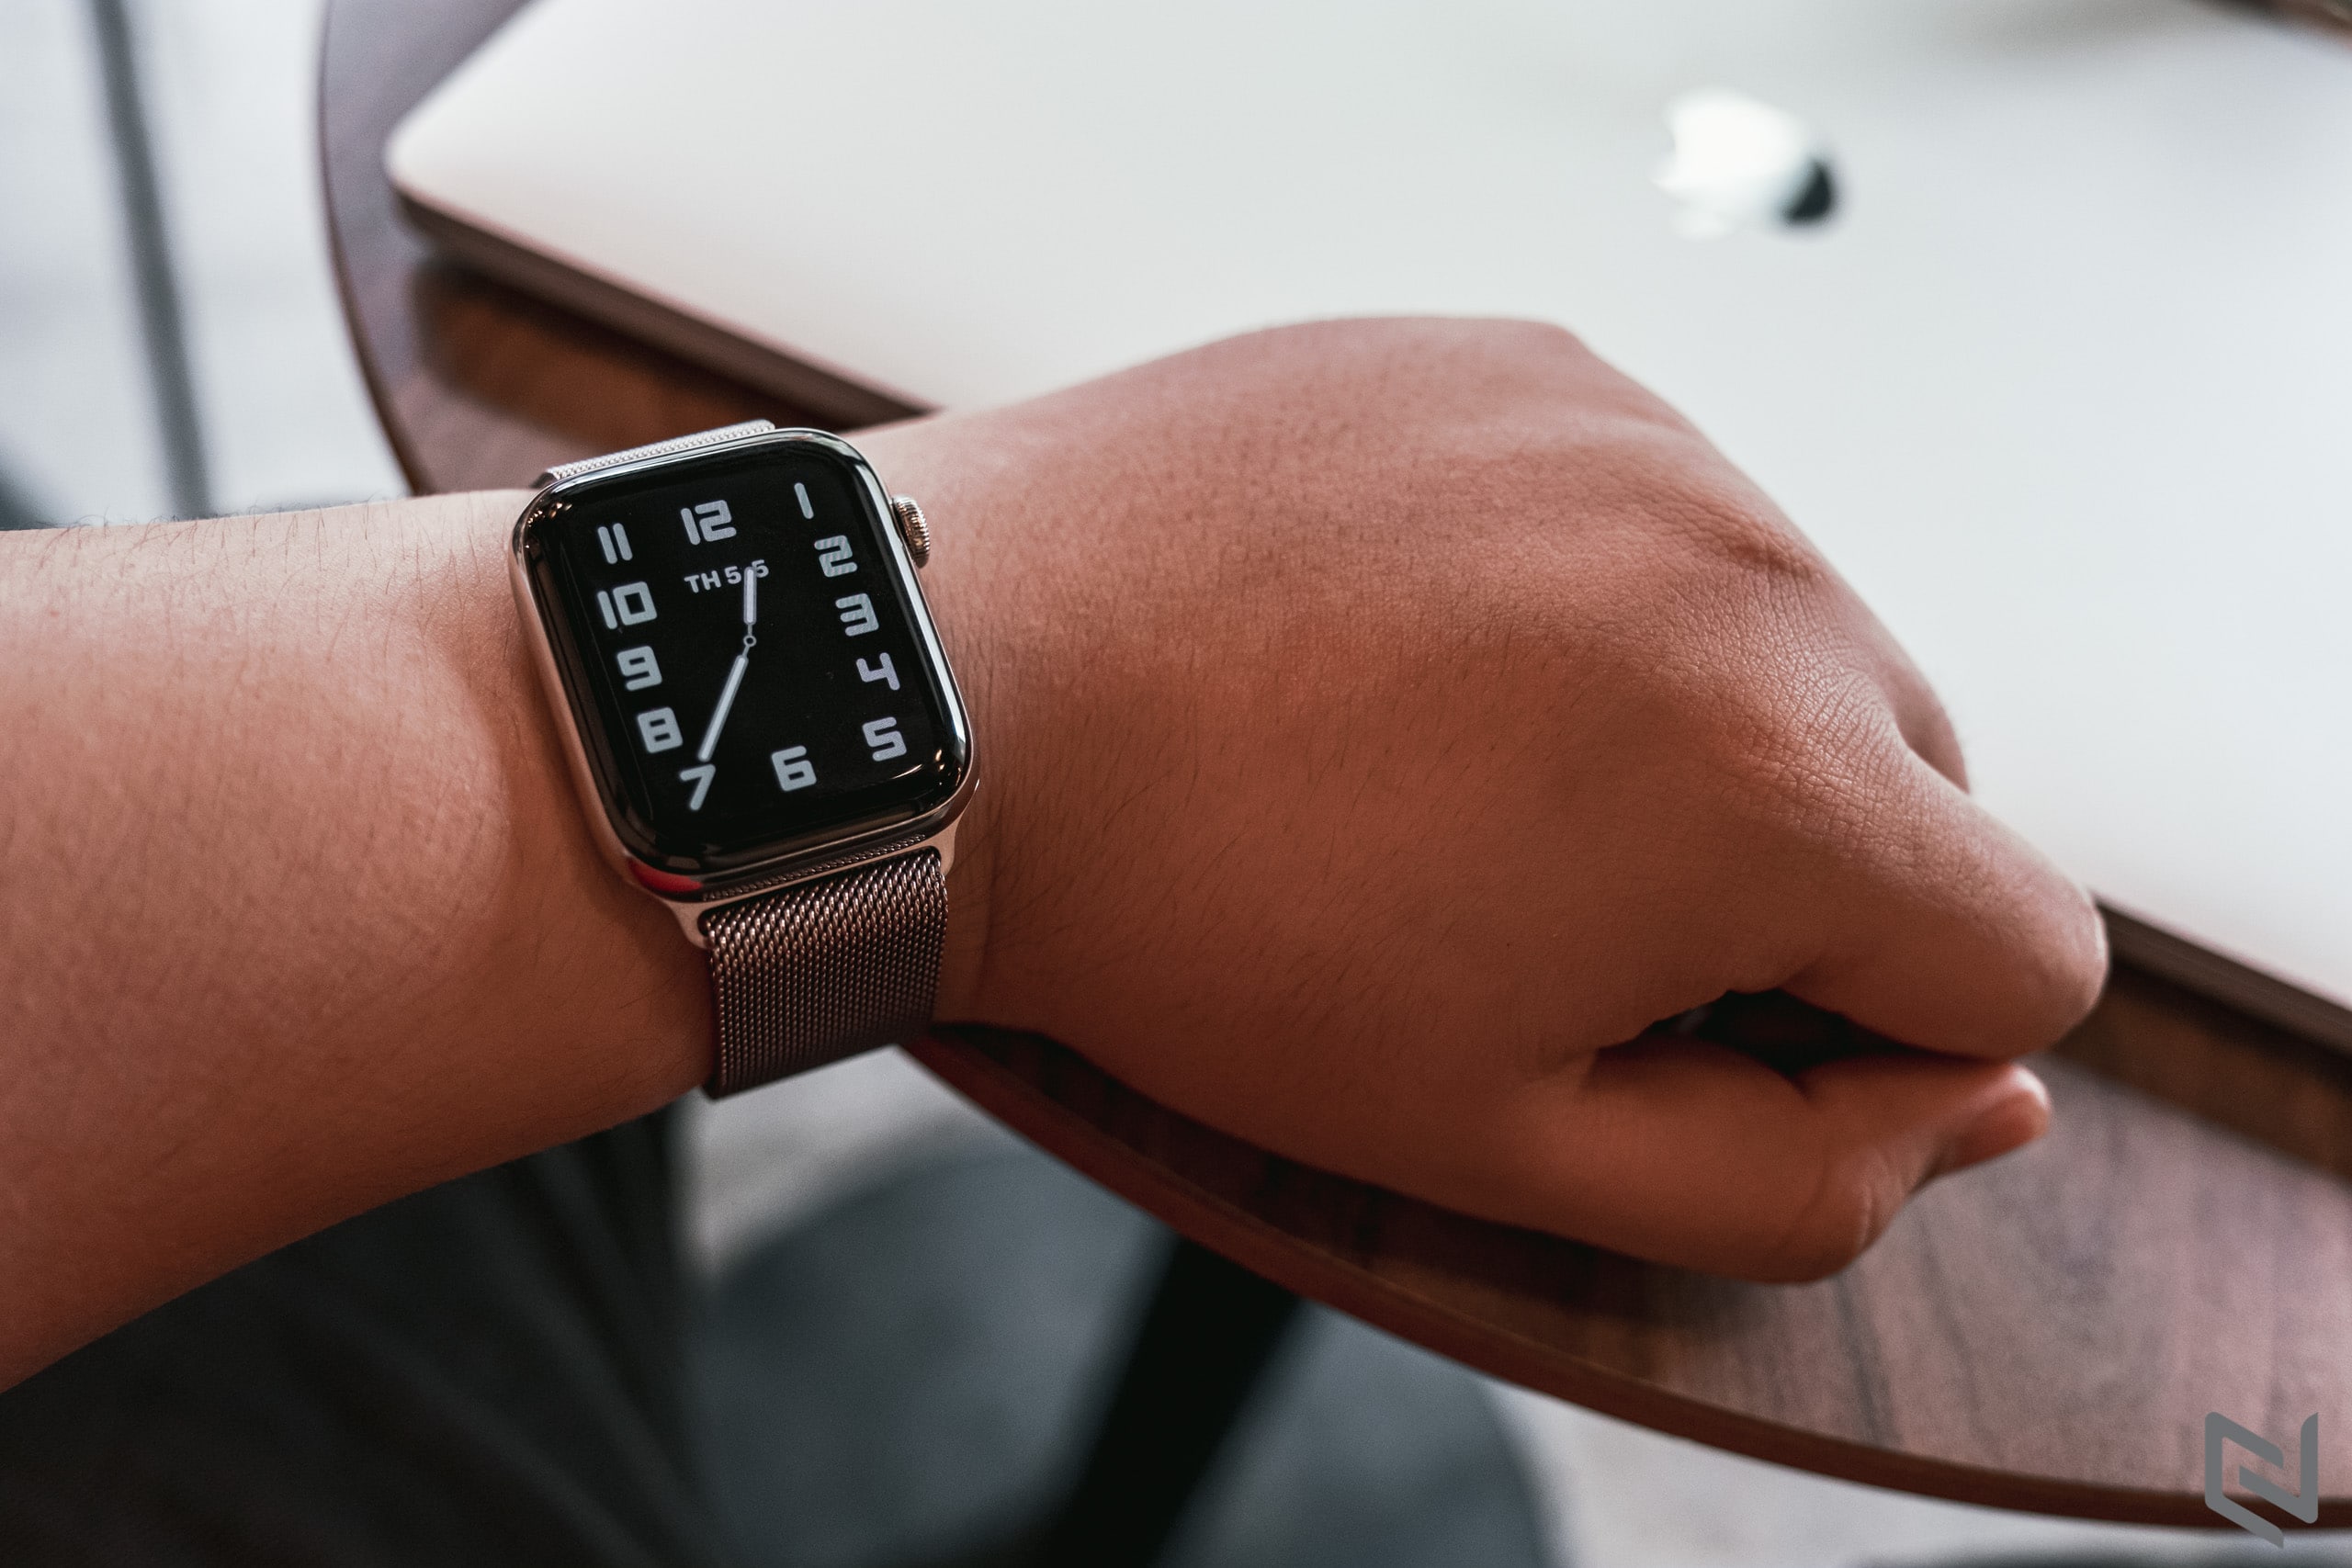 Hướng dẫn cách khôi phục firmware cho Apple Watch bằng iPhone